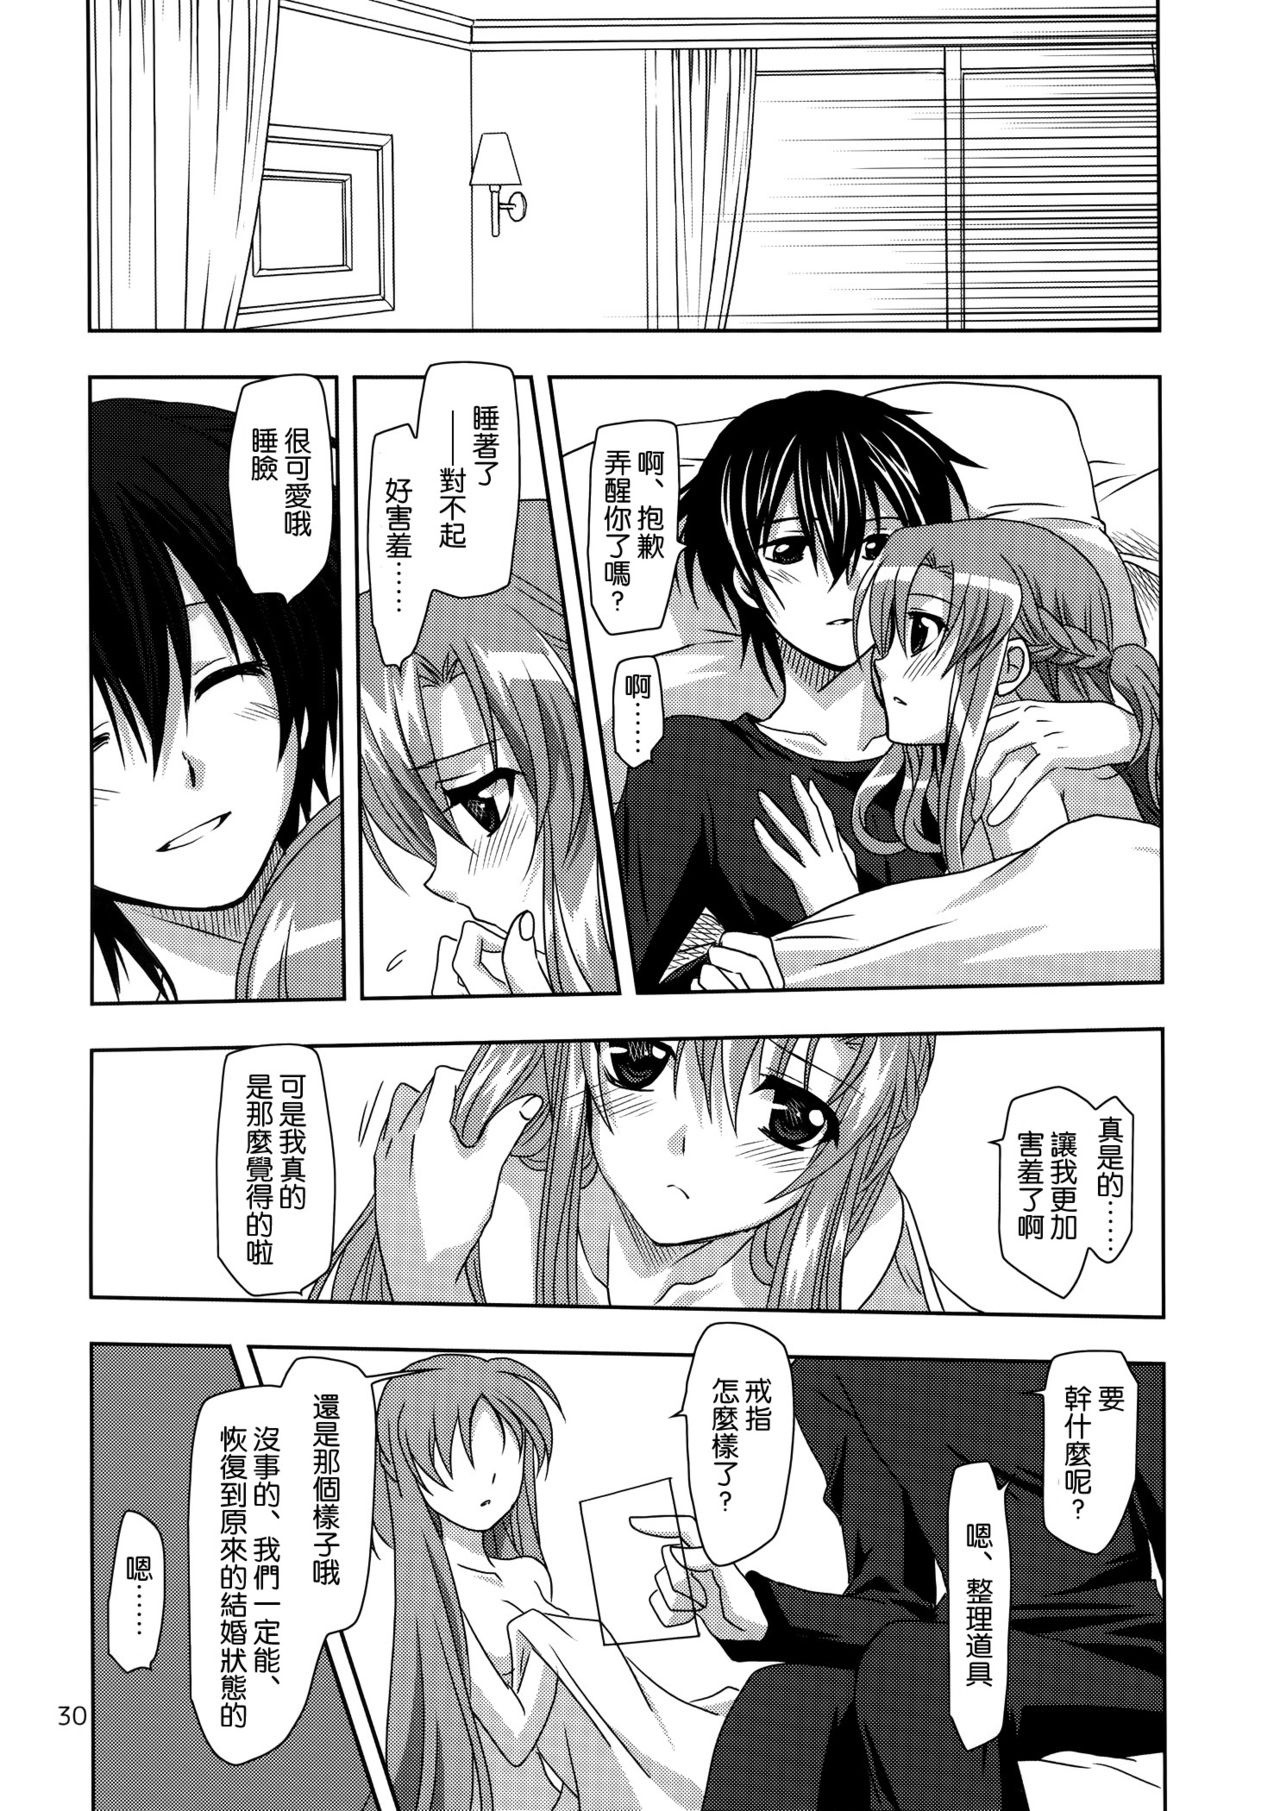 ONE MORE LOVE hentai manga picture 29